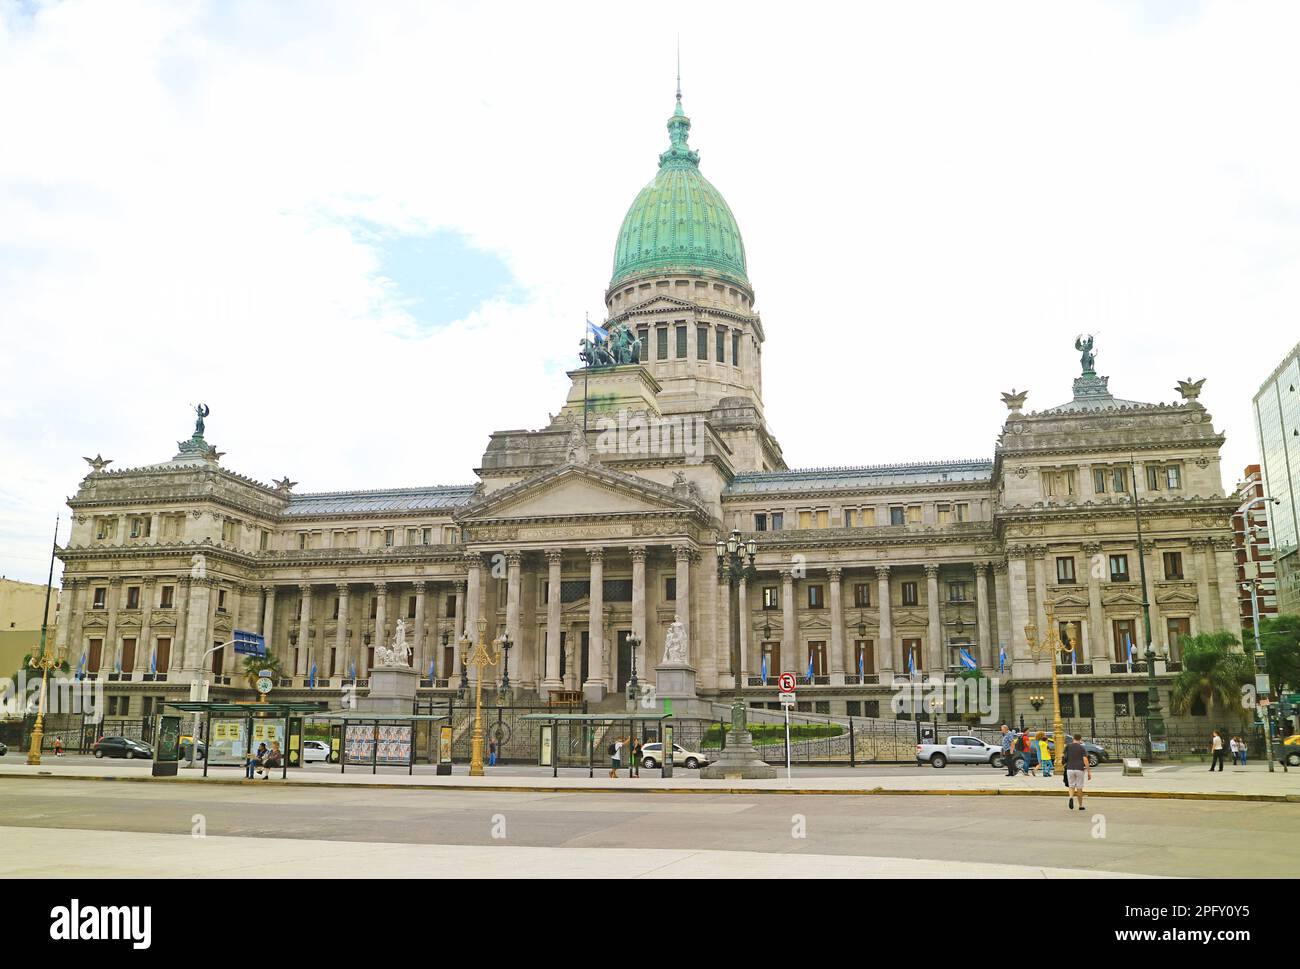 Imposanter Palast des argentinischen Nationalkongresses, herrliches Monumentalgebäude in Buenos Aires, Argentinien, südamerika Stockfoto